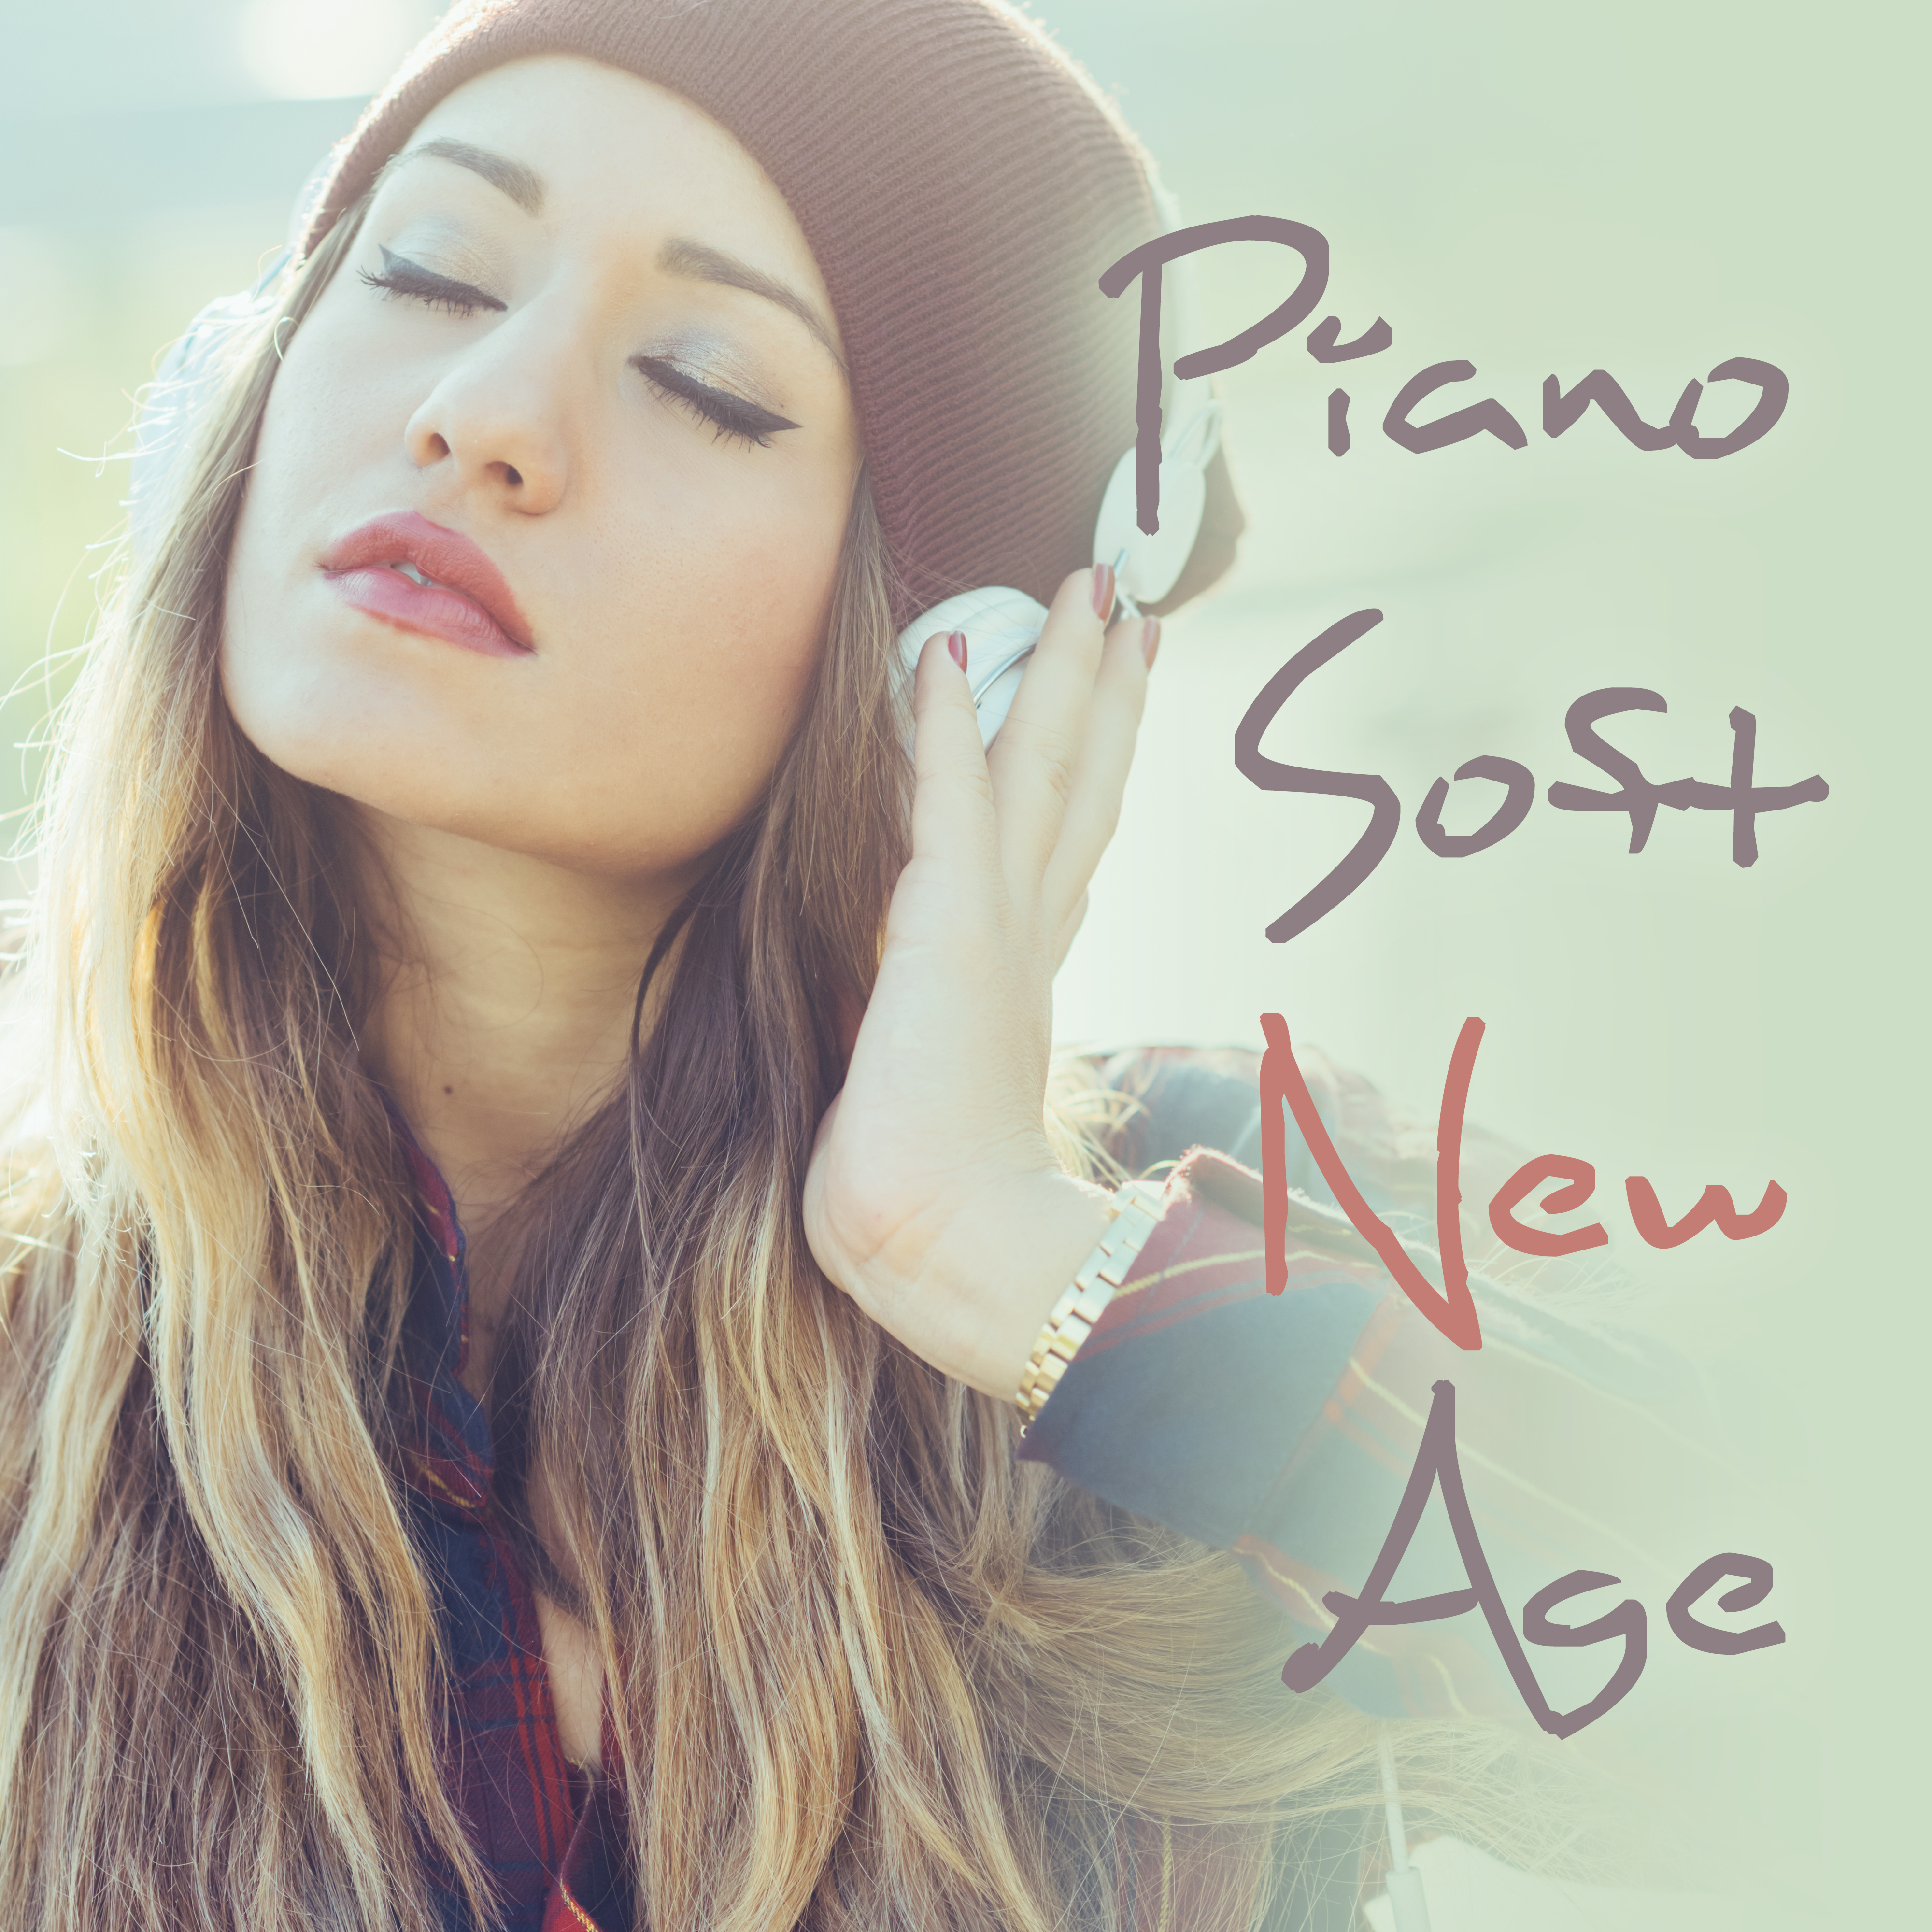 Piano Soft New Age